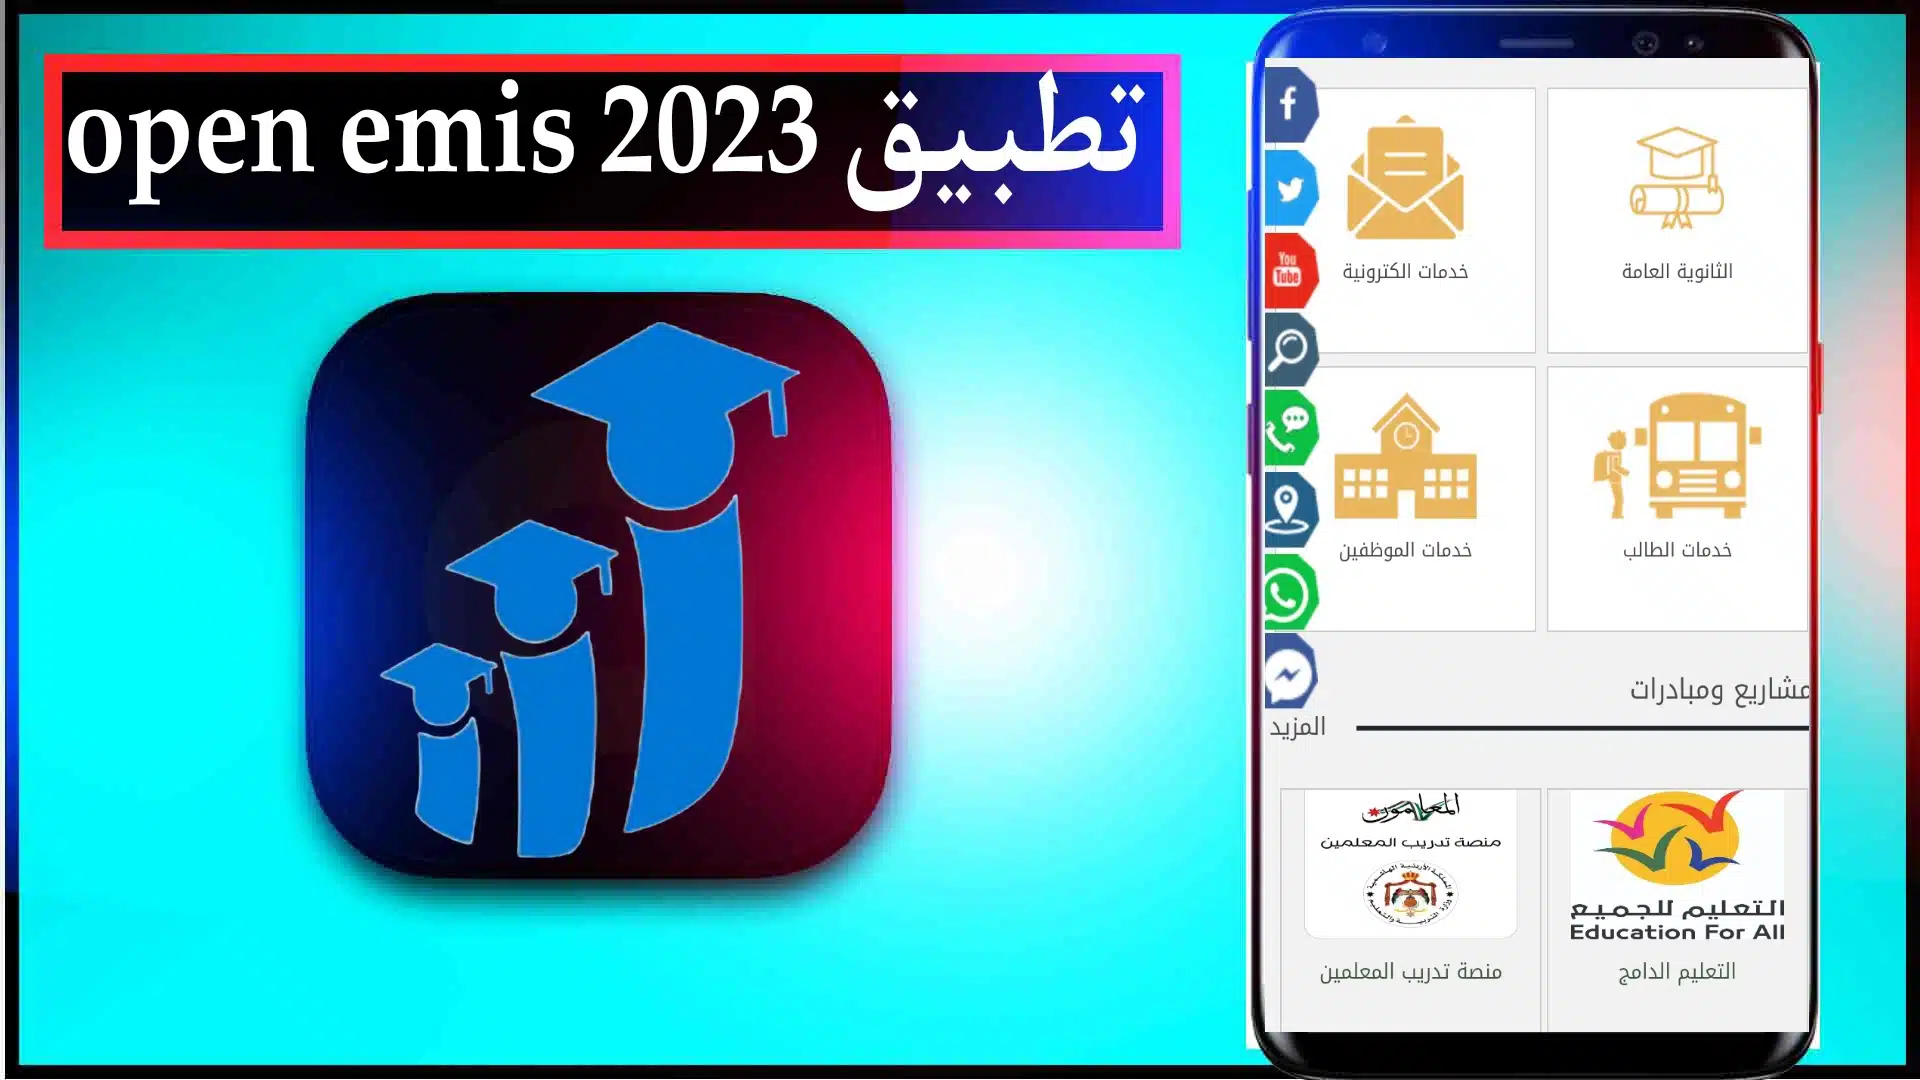 تحميل تطبيق اوبن ايميس الاردن open emis 2023 علامات طلاب المدارس 2